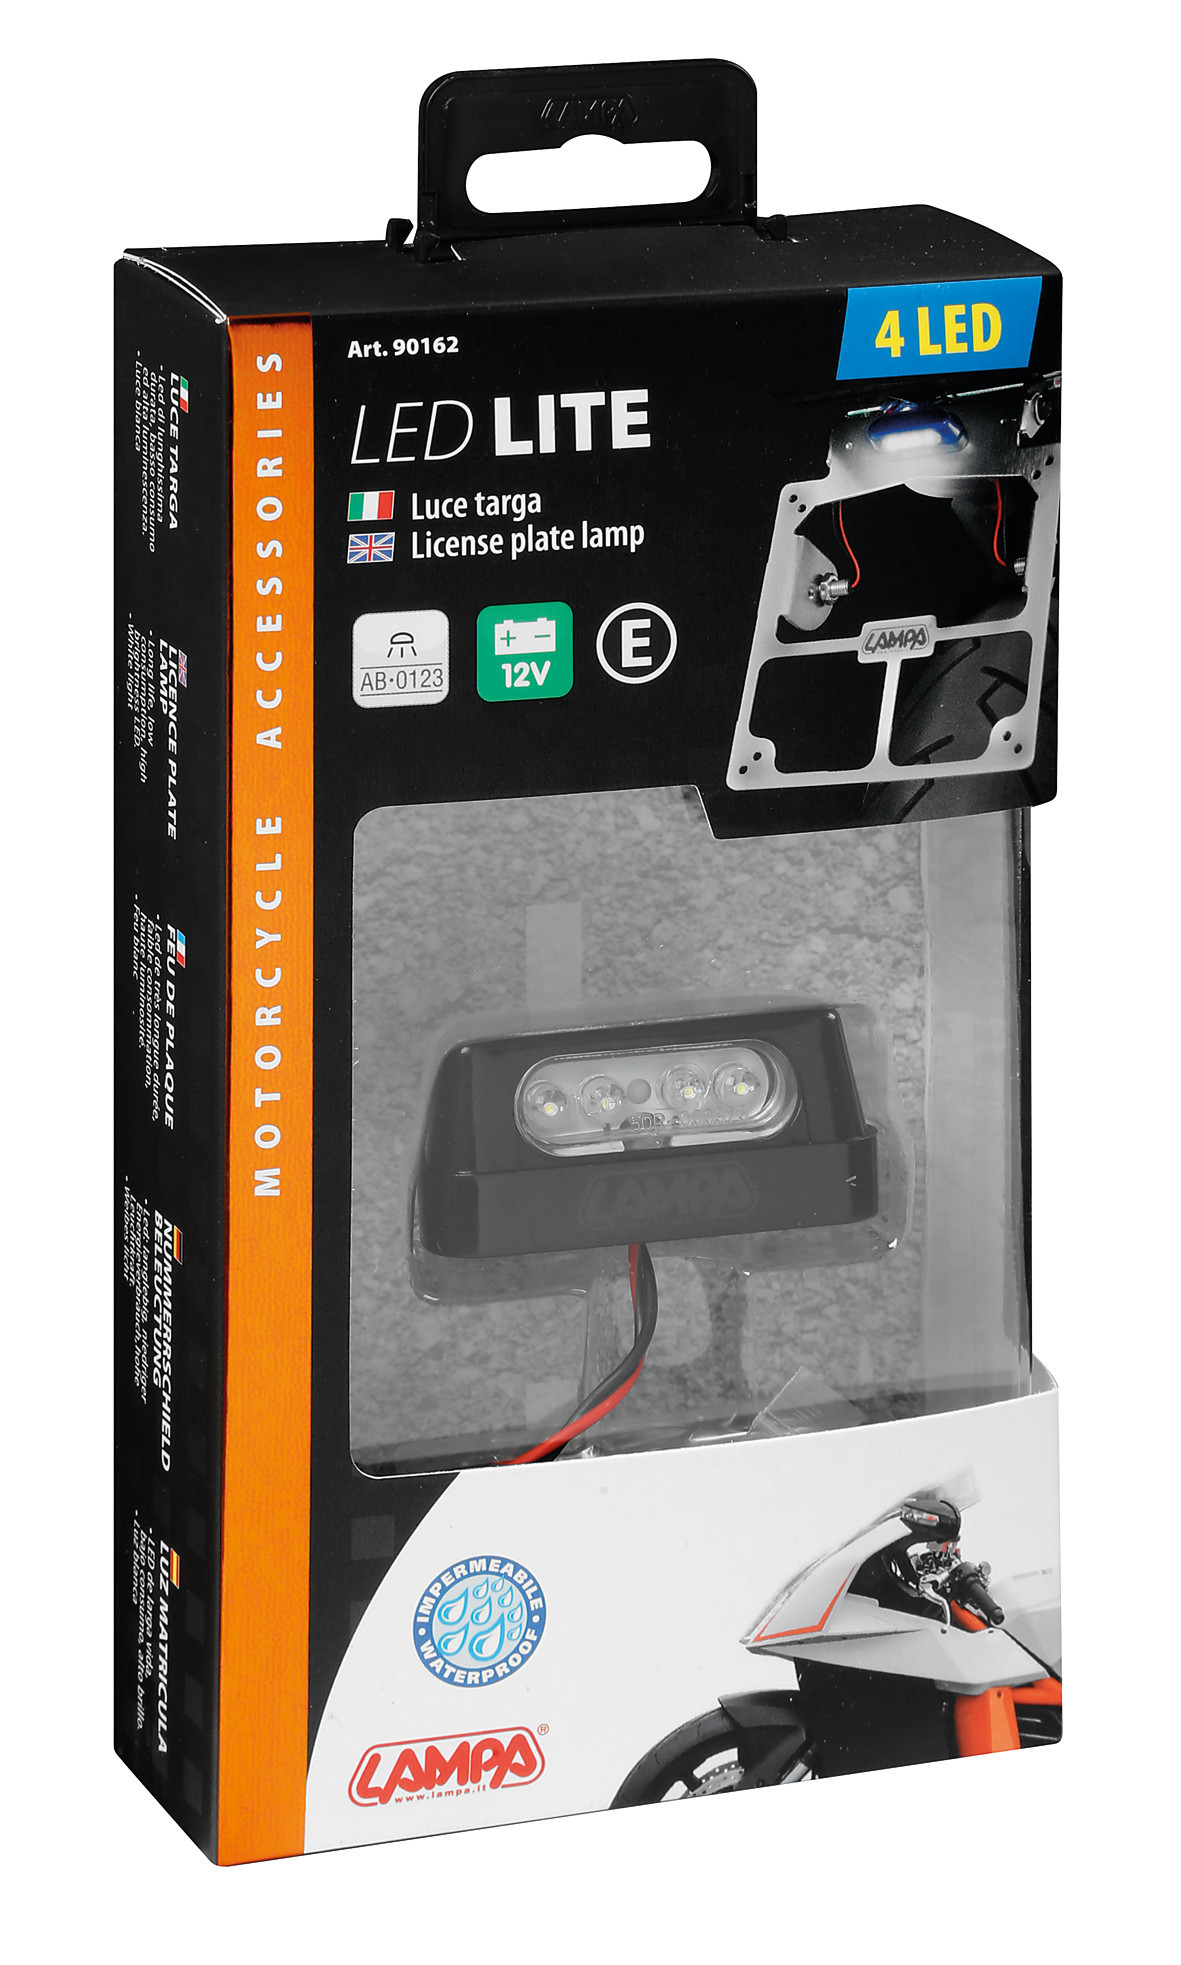 Lampa iluminat numar inmatriculare cu 4 LED 12V - Alb Garage AutoRide